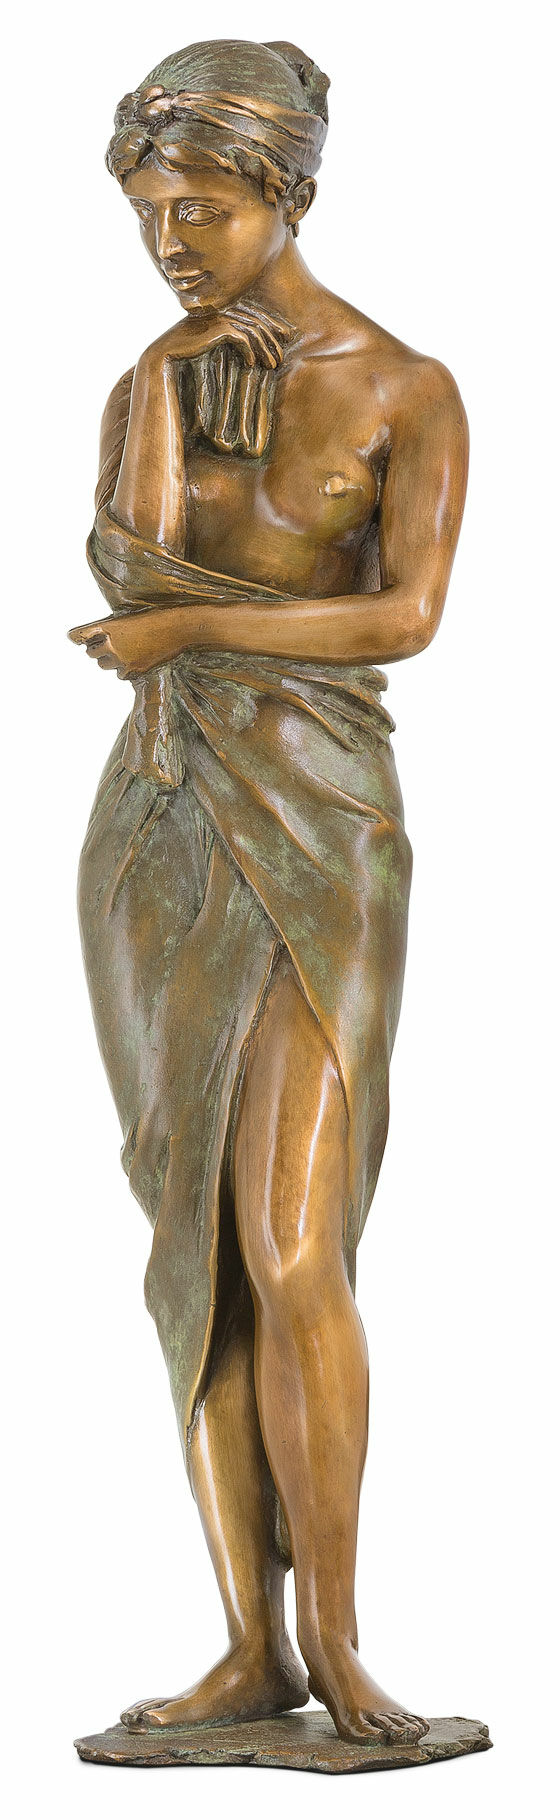 Skulptur "I rosenhaven", bronze von Erwin A. Schinzel